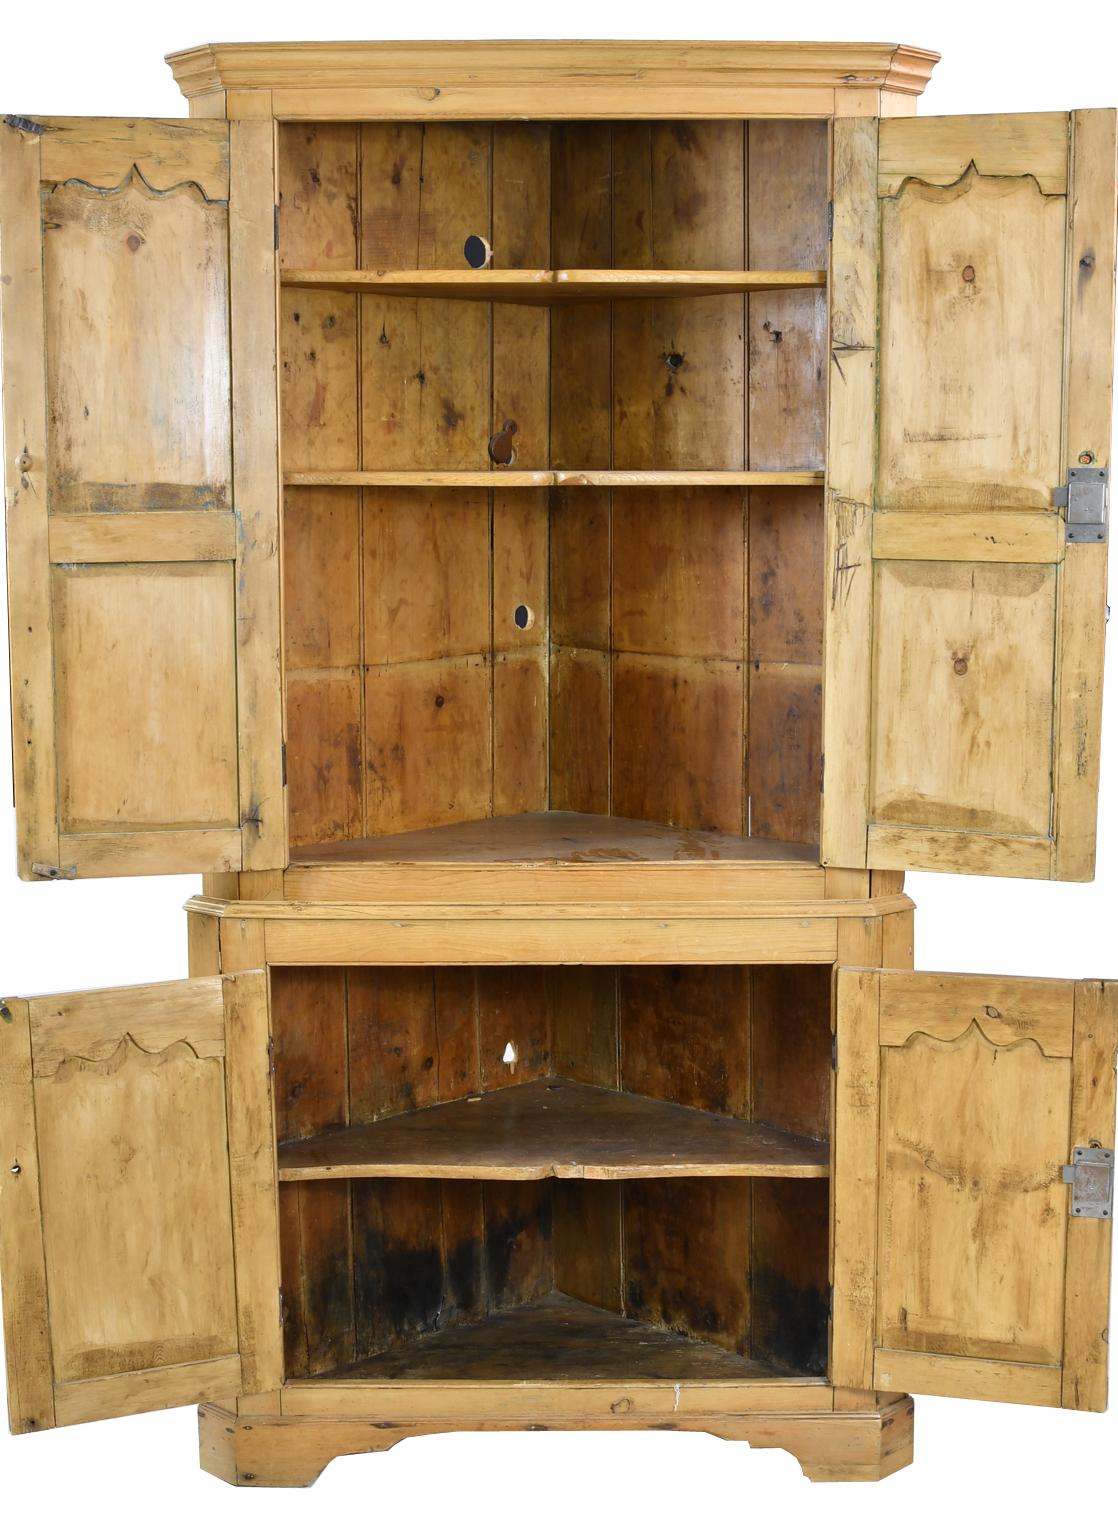 Charmante armoire d'angle de style anglais en pin clair de couleur miel avec des coins chanfreinés, quatre portes avec des panneaux encastrés et une moulure supérieure festonnée et sculptée, et reposant sur des pieds en forme d'équerre. L'intérieur